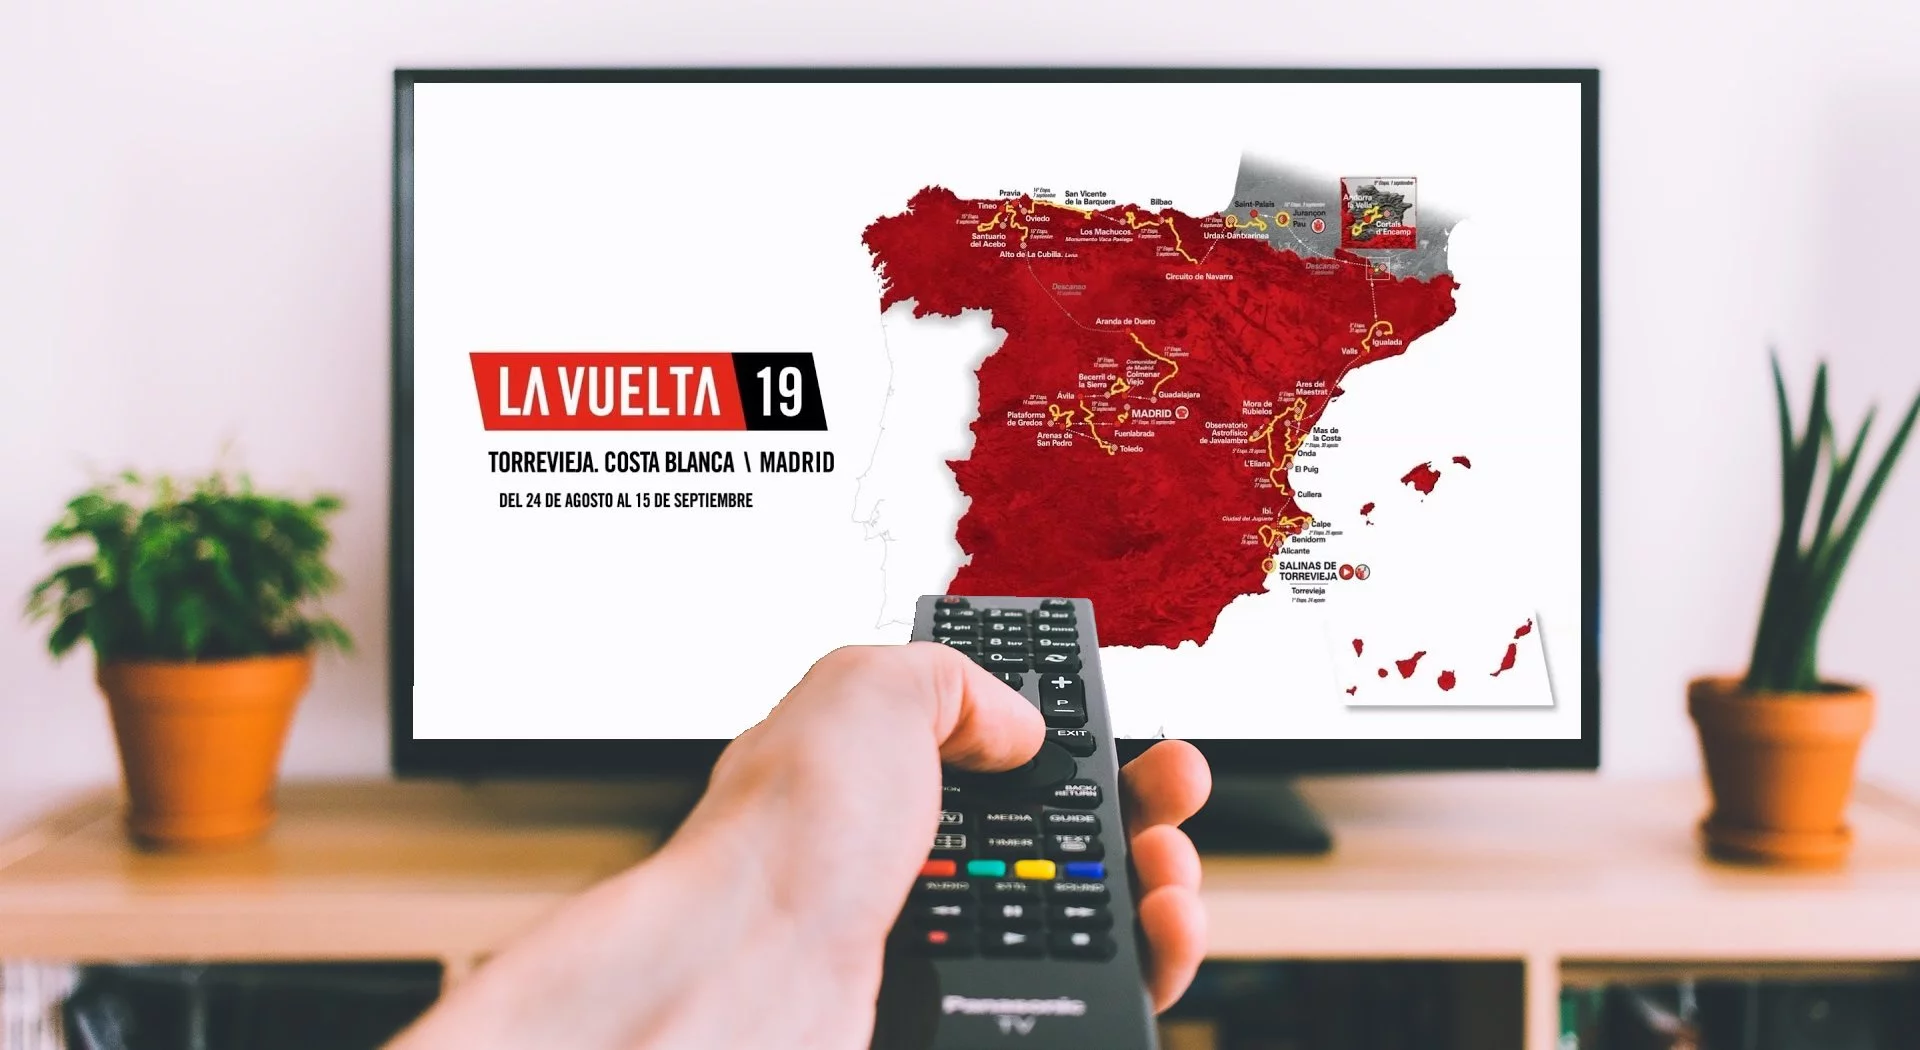 La Vuelta 2019 TV Streaming Guide